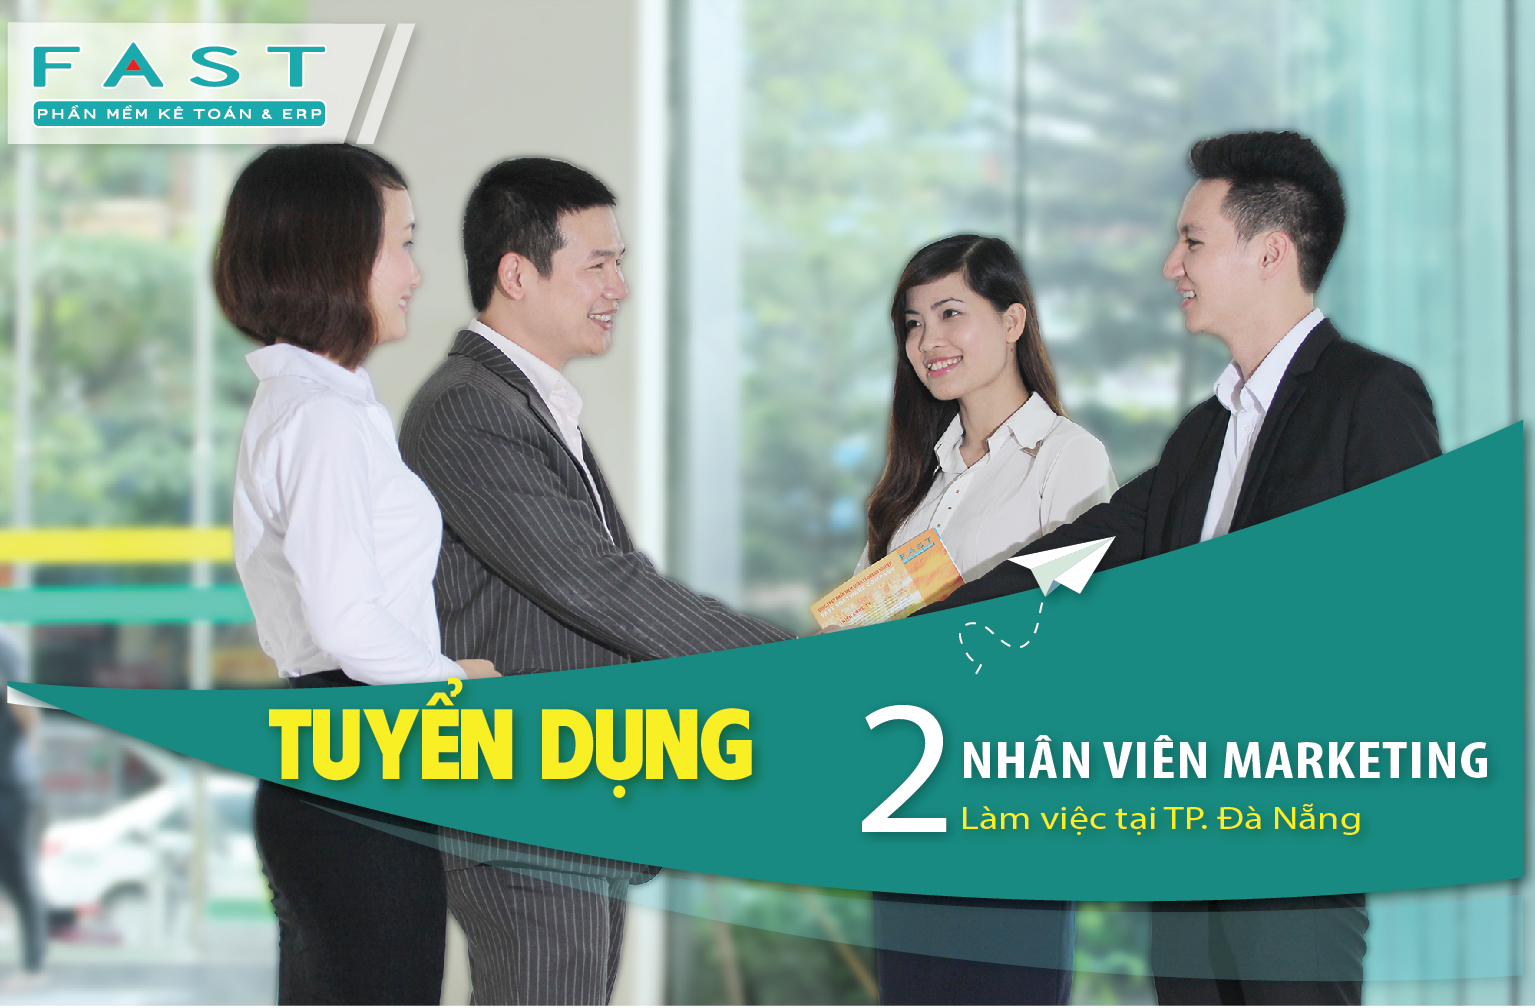 FAST tuyển nhân viên marketing tại Đà Nẵng (hết hạn 16-04-2019)